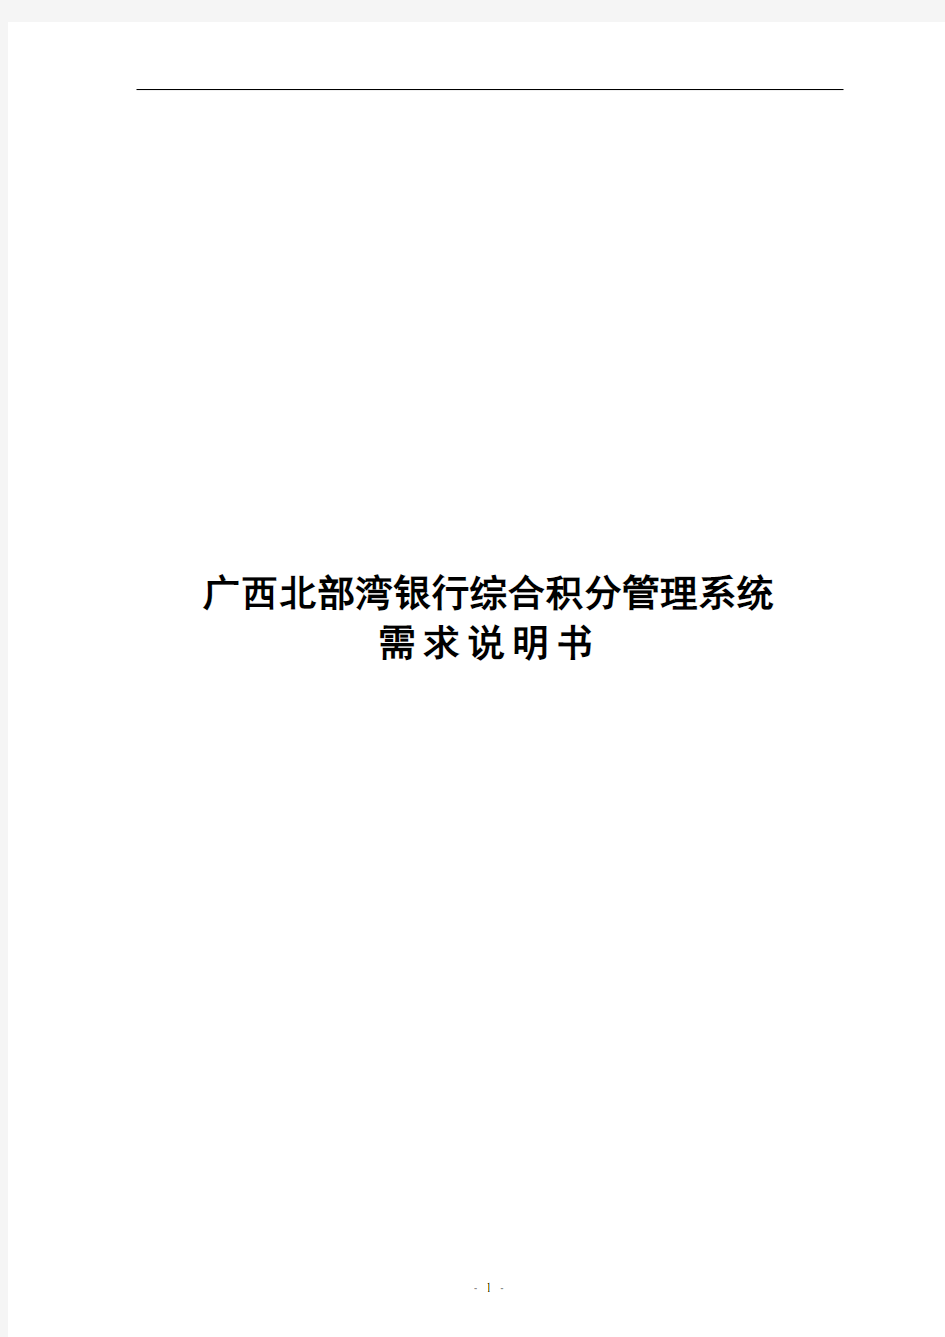 广西北部湾银行综合积分管理系统需求说明书